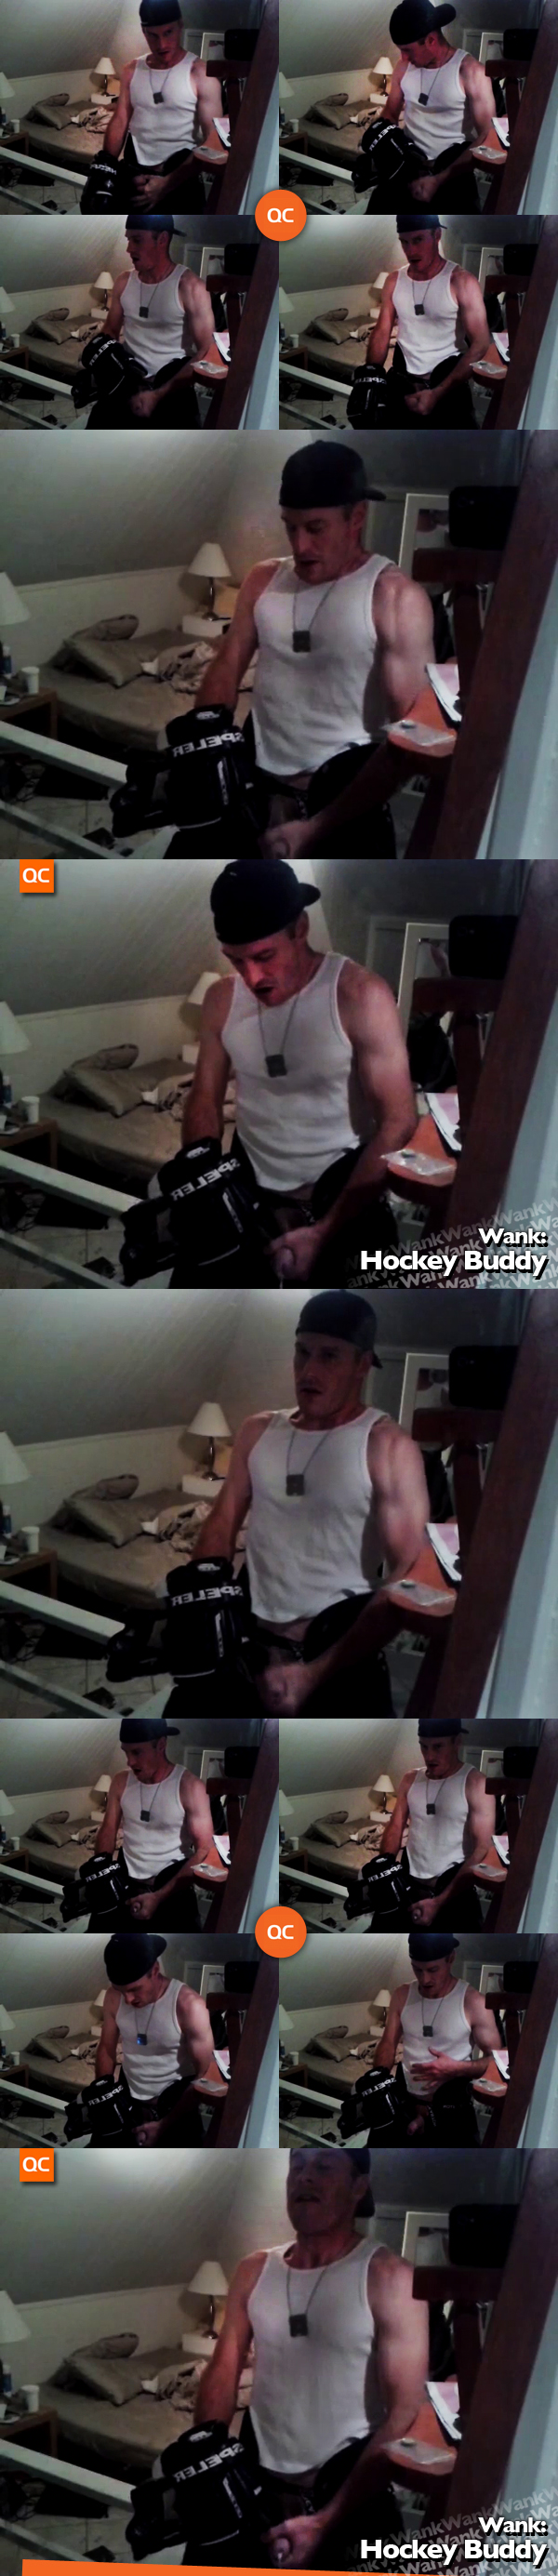 Wank: Hockey Buddy